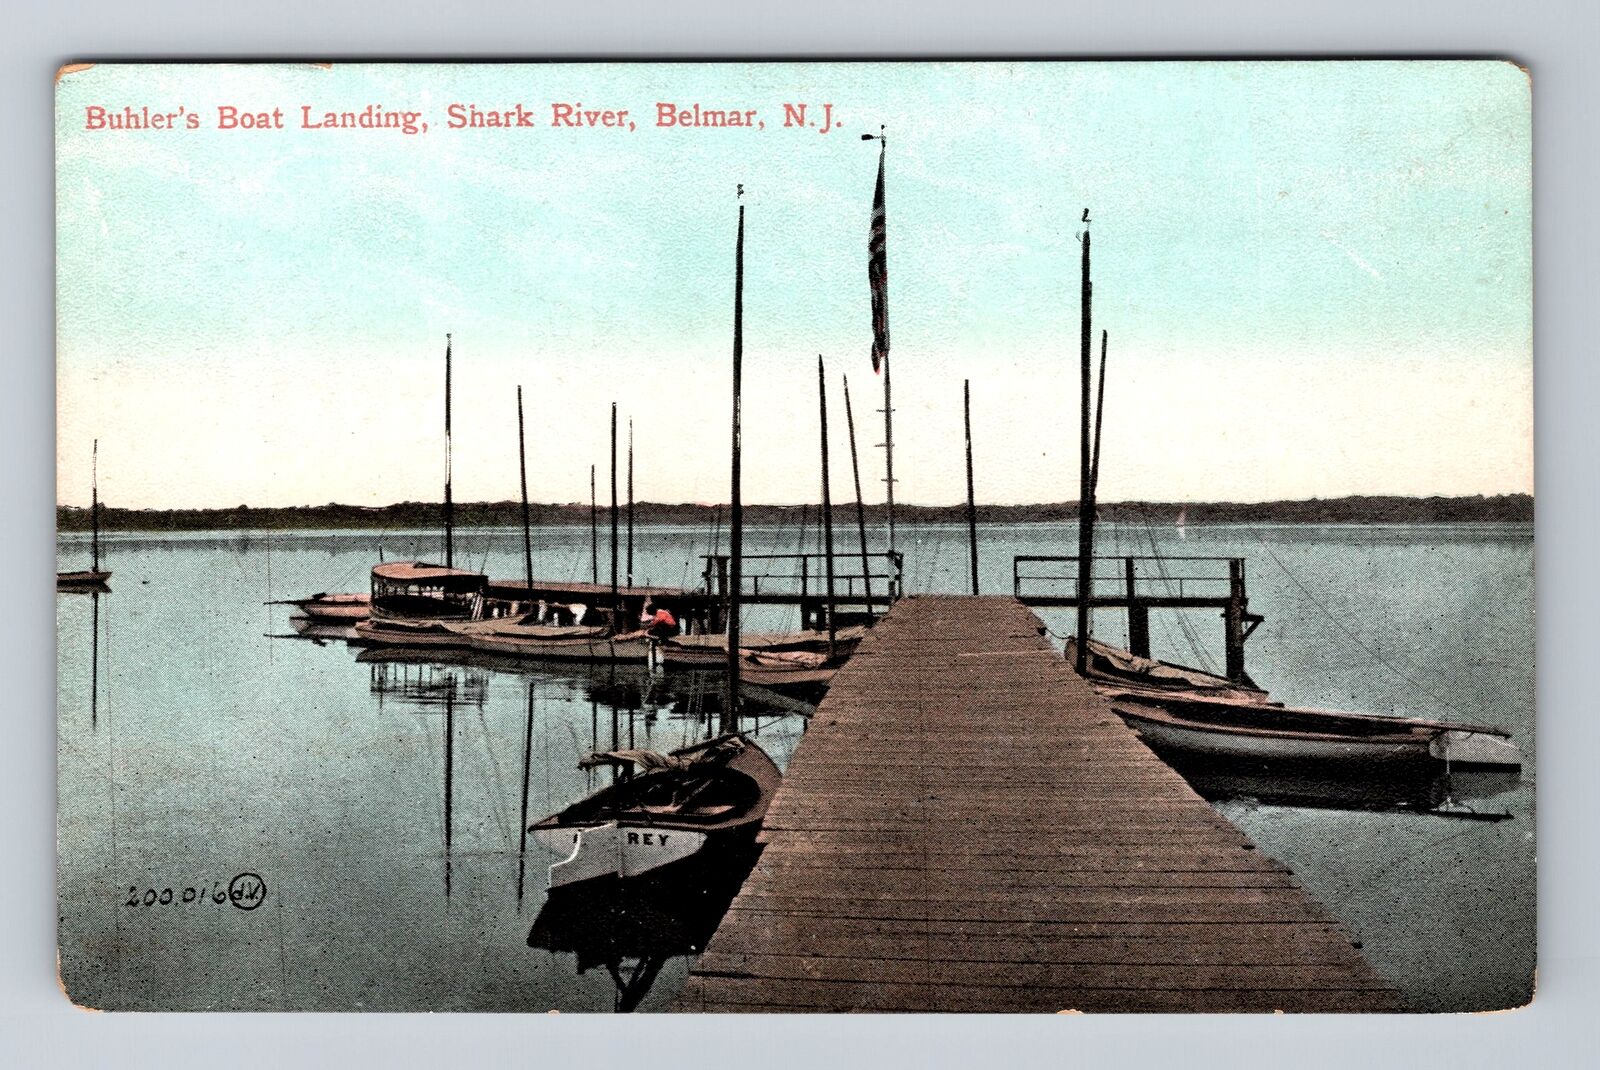 Belmar NJ-New Jersey, Buhler's Boat Landing, Shark River, Vintage Postcard